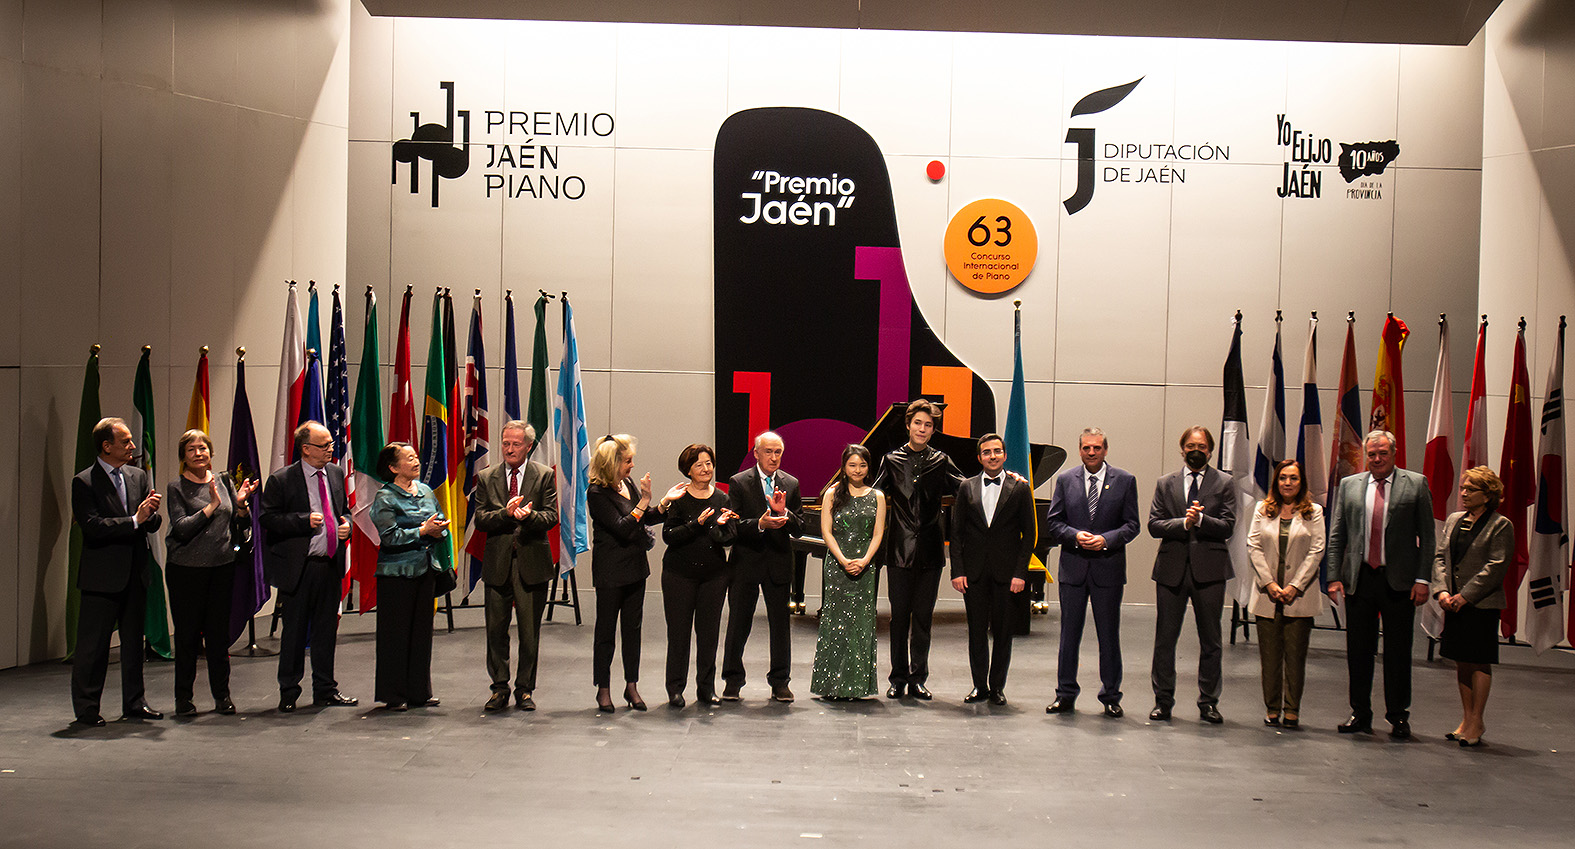 Foto de la noticia: El pianista estadounidense Ángel Wang gana la 63ª edición del Premio “Jaén” de Piano de la Diputación